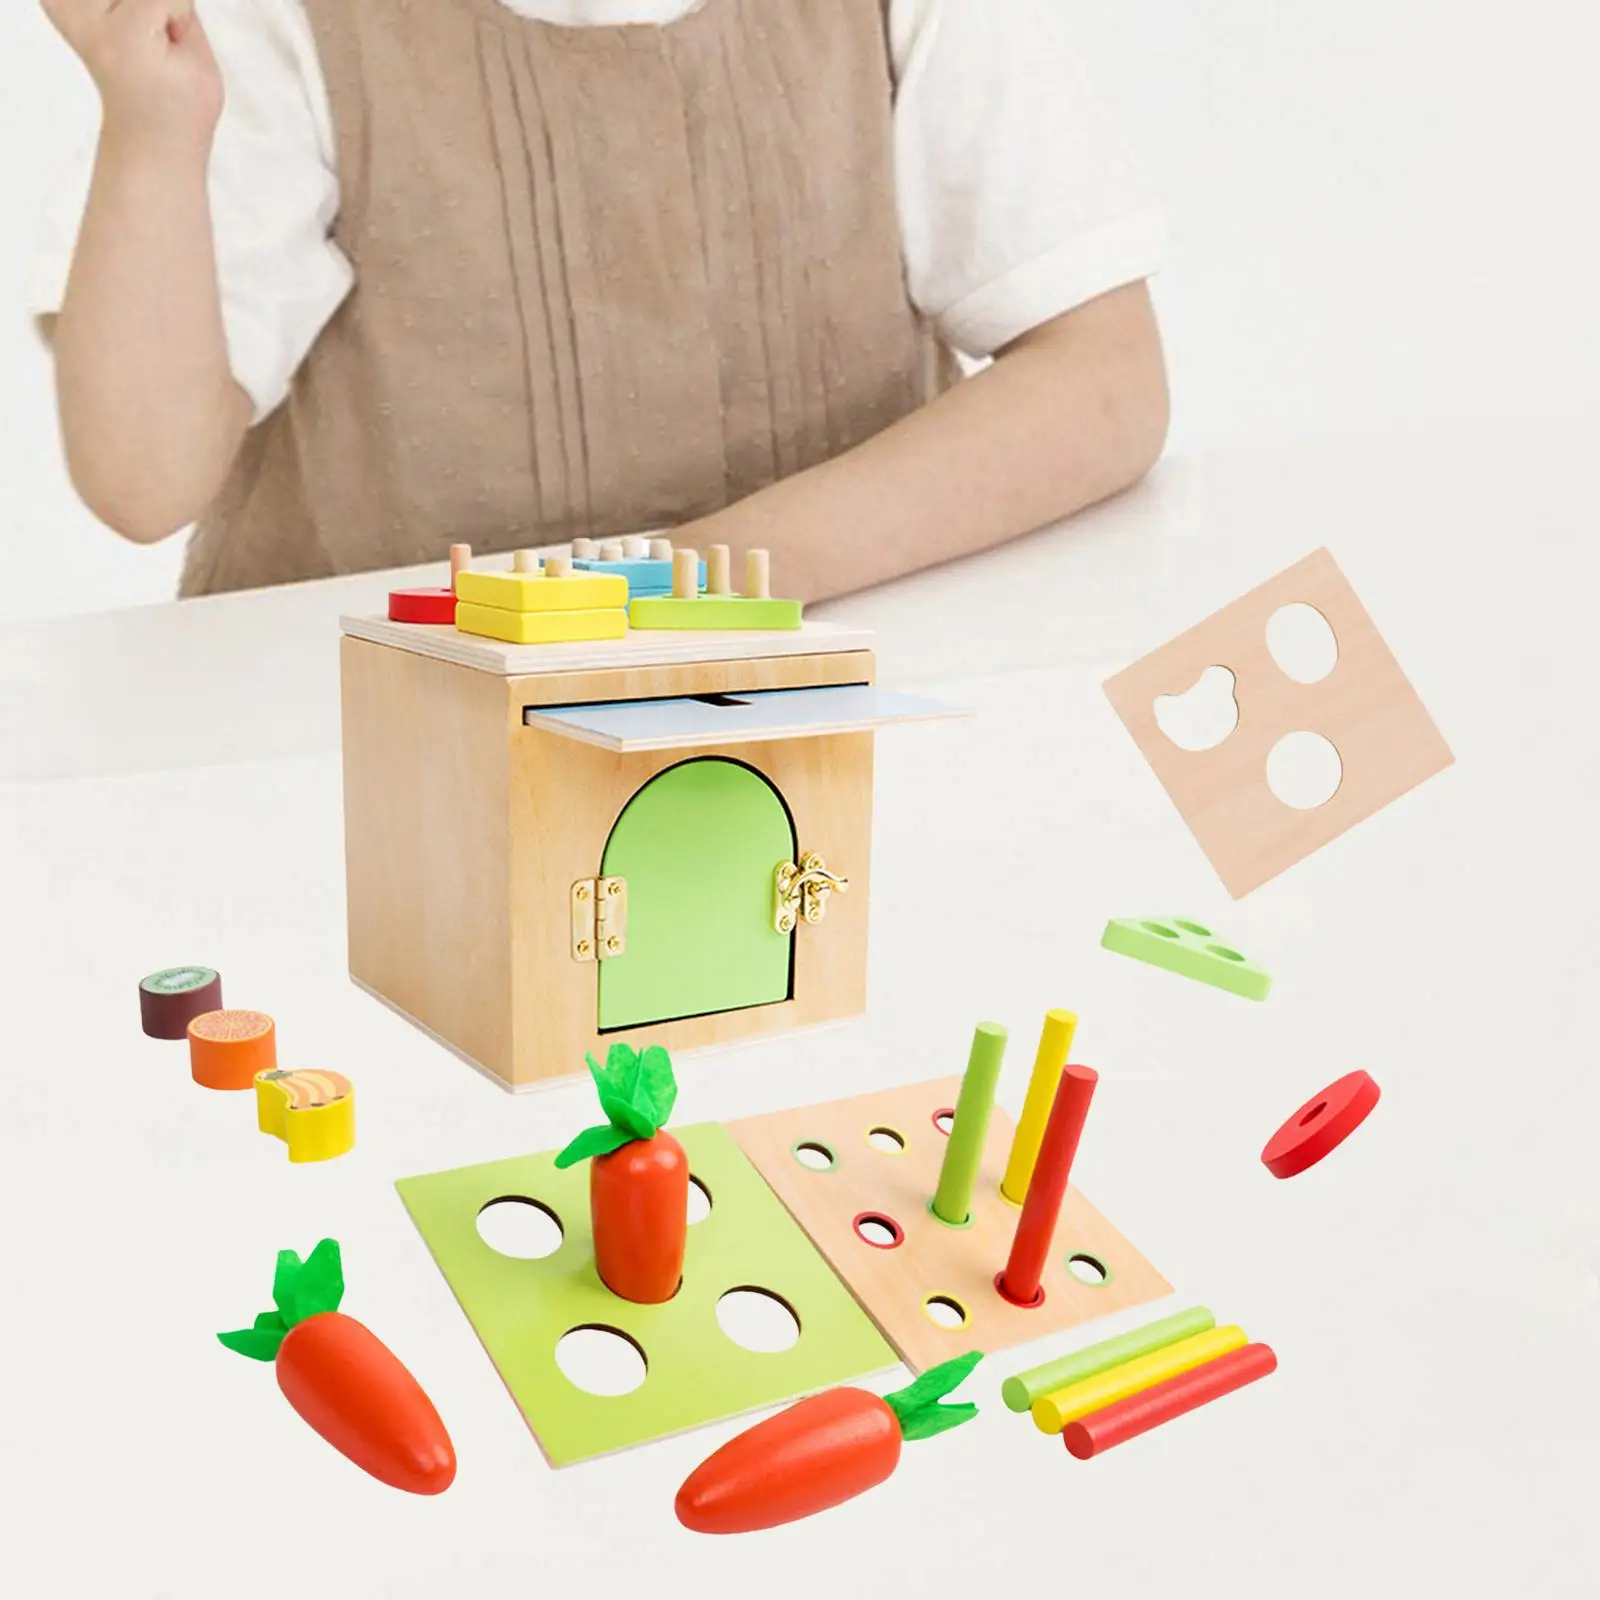 Wooden kit Montessori Toy Sorting Preschool Training Shape Sorter for Children